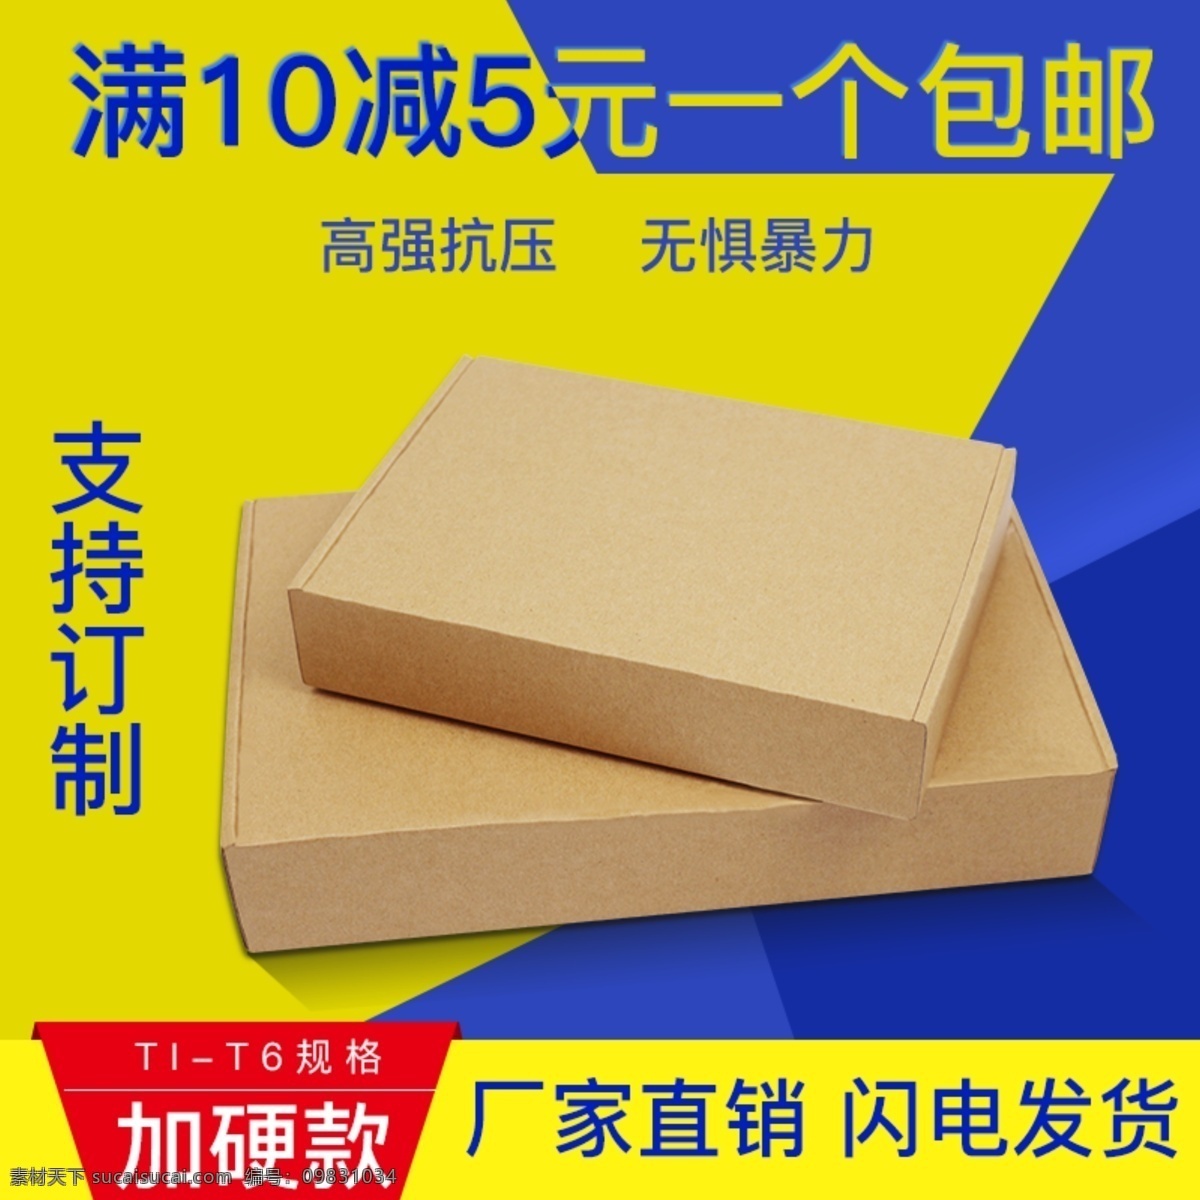 淘宝 飞机 盒 纸箱 主 图 蓝色 黄色 飞机盒主图 闪电发货 飞机盒推广图 加硬